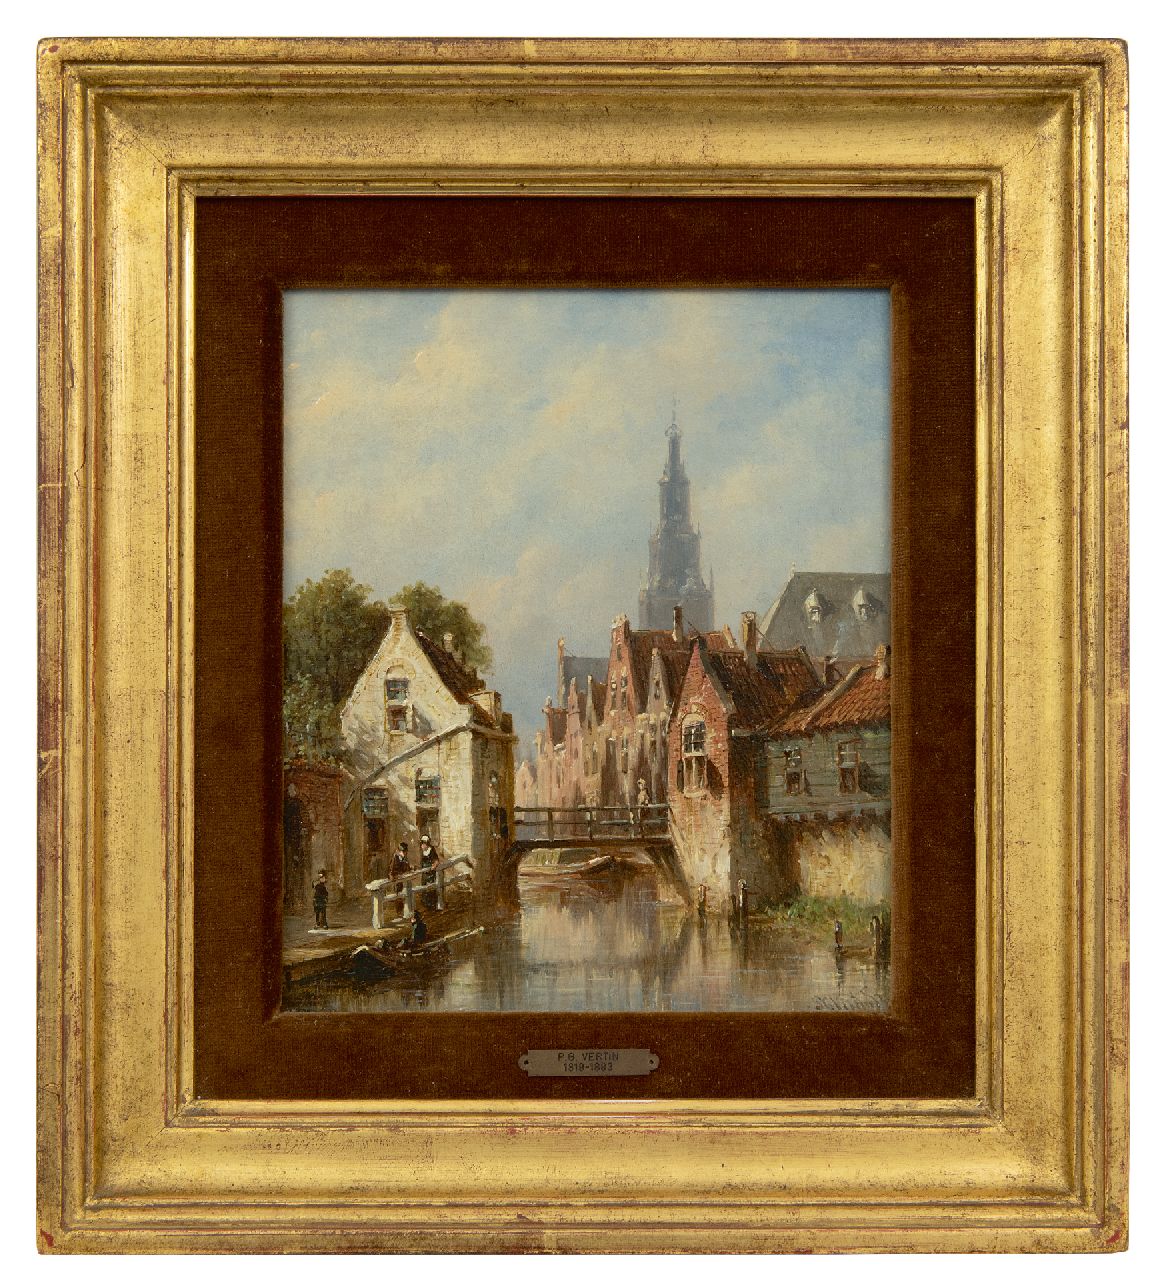 Vertin P.G.  | Petrus Gerardus Vertin | Schilderijen te koop aangeboden | Zonnig stadsgrachtje, de Alkmaarse Waagtoren op de achtergrond, olieverf op paneel 22,7 x 19,4 cm, gesigneerd rechtsonder en verso gedateerd 1881